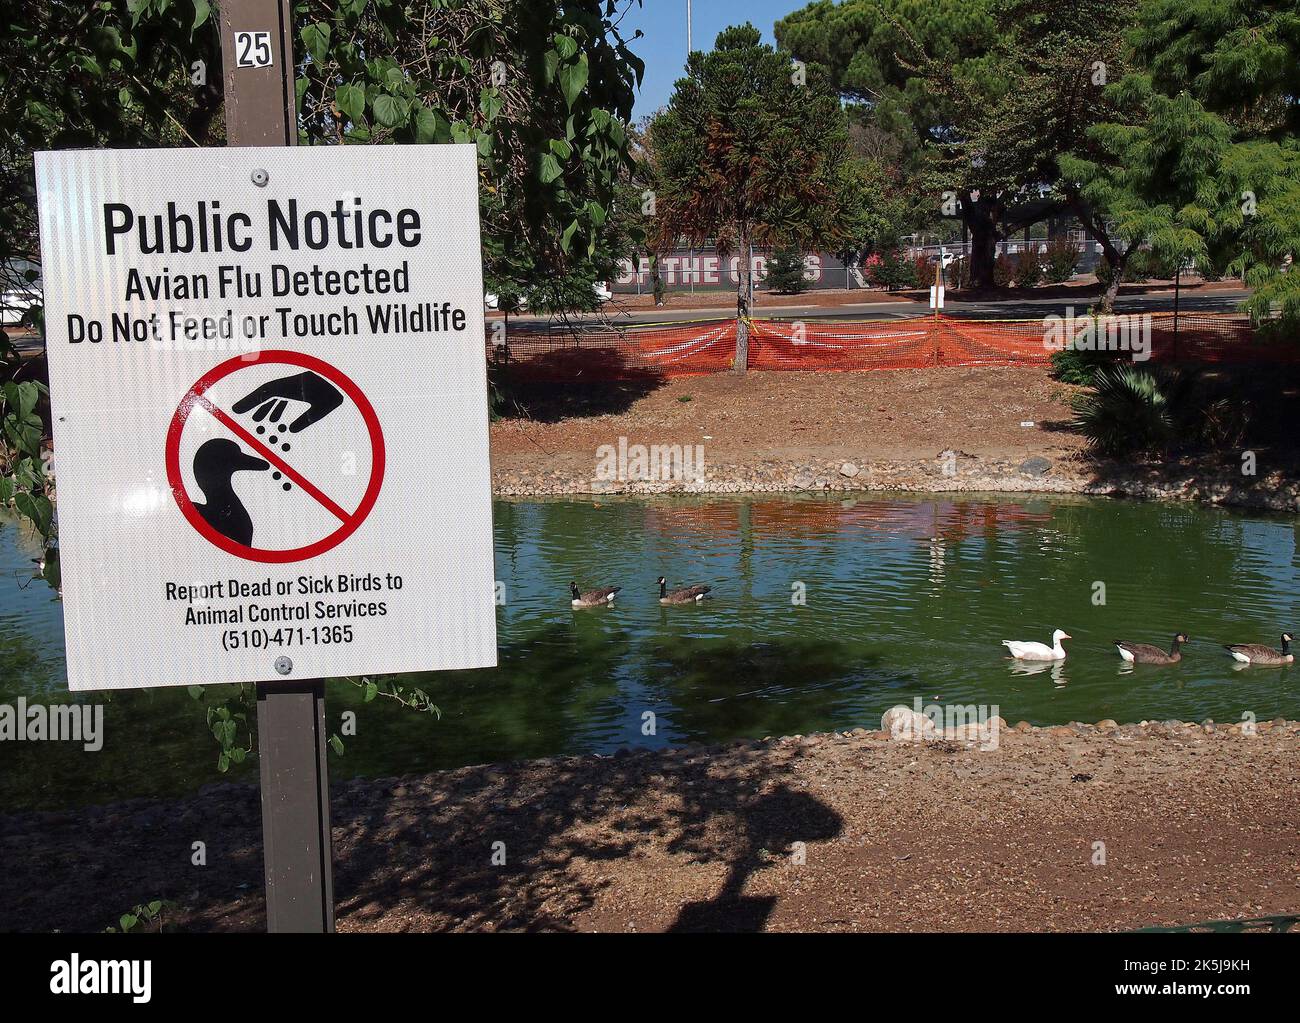 park Teich mit Wasservögeln eingezäunt in Union City, Kalifornien und Vogelgrippe erkannt Füttern oder berühren Wildtiere nicht öffentlichen Hinweisschild, melden Sie tote oder kranke Vögel an Animal Control Services Stockfoto